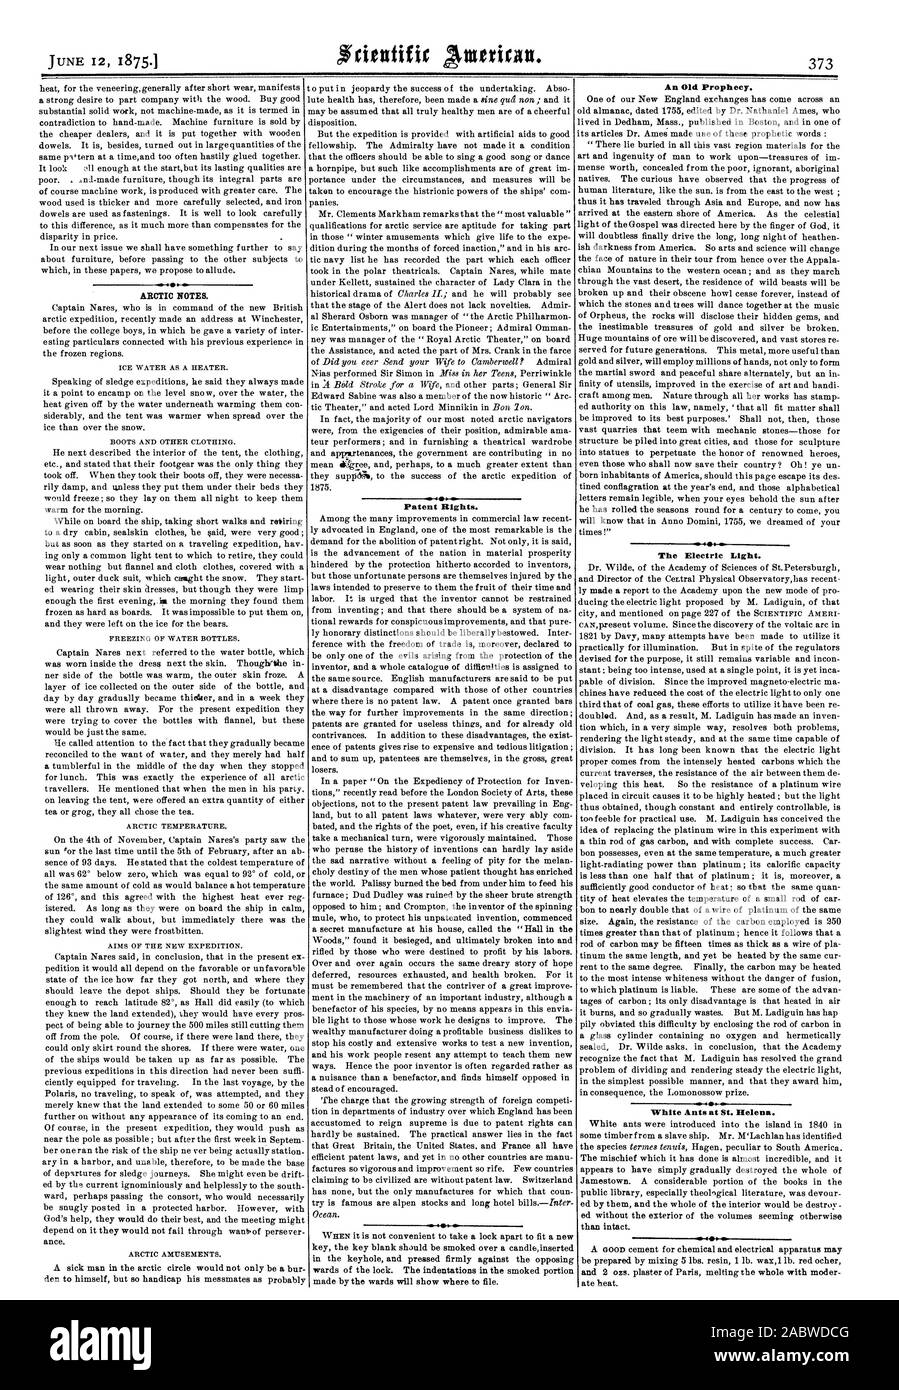 Arktis Notizen. Patentrechte. Eine alte Prophezeiung. Das elektrische Licht. Weiße Ameisen auf St. Helena., Scientific American, 1875-06-12 Stockfoto